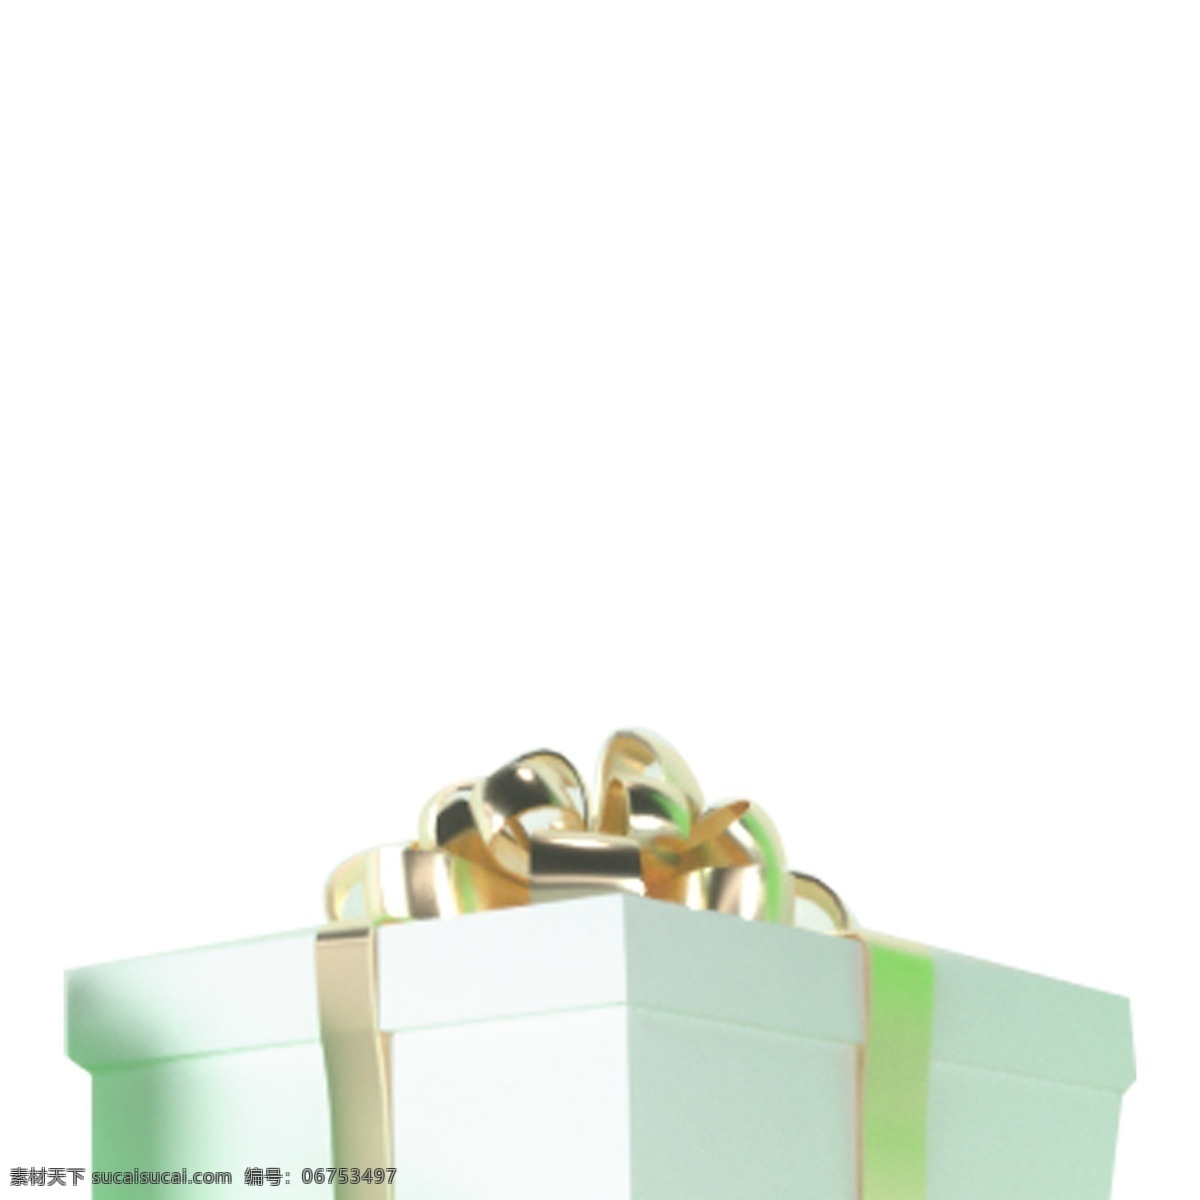 礼品包装 盒子 免 抠 图 礼物 卡通图案 卡通插画 包装盒子 生日礼物 节日礼物 绿色的礼盒 包装盒 免抠图